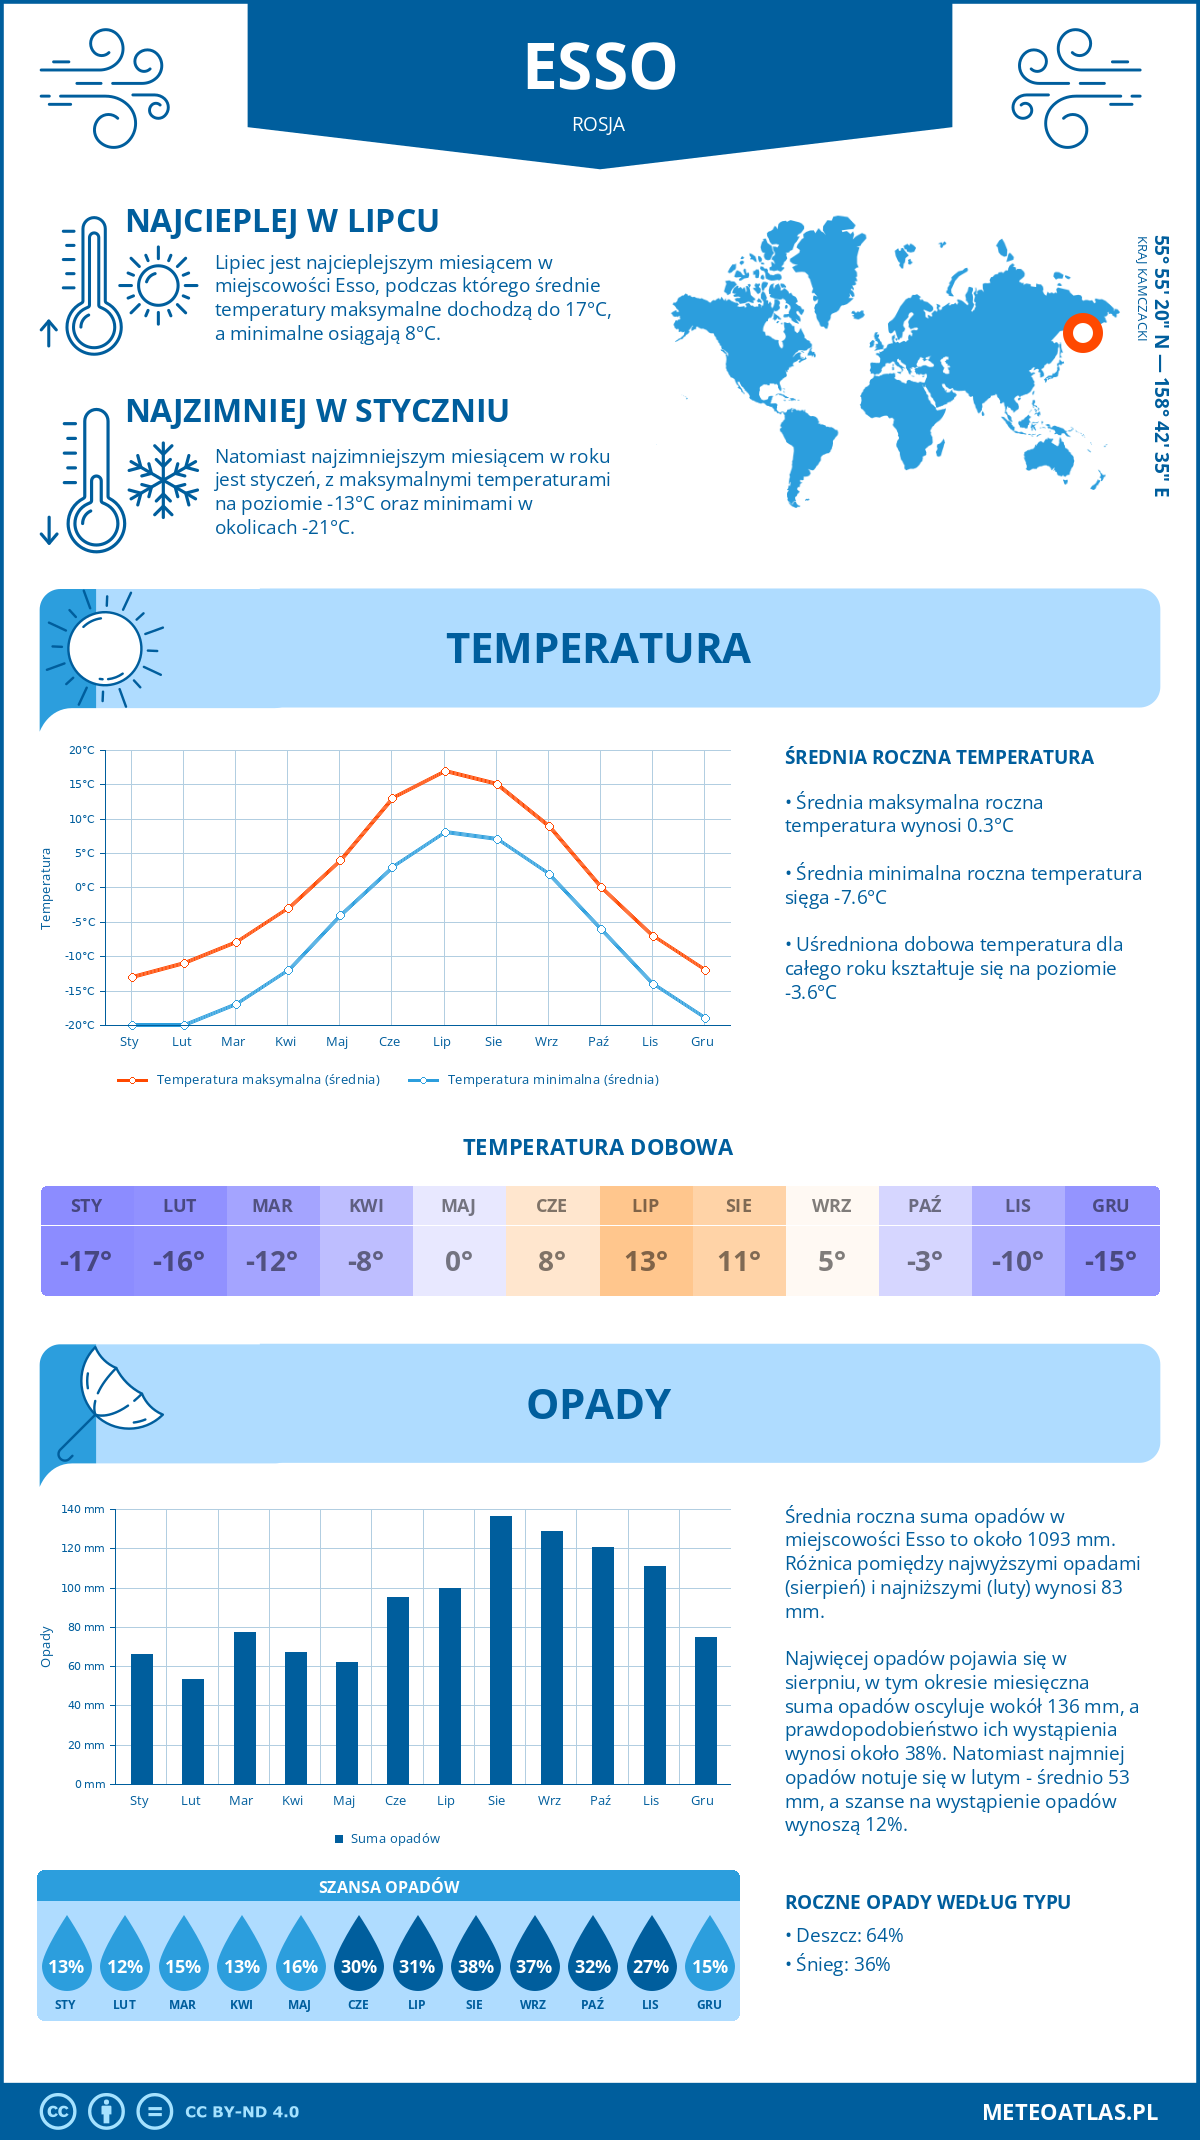 Pogoda Esso (Rosja). Temperatura oraz opady.